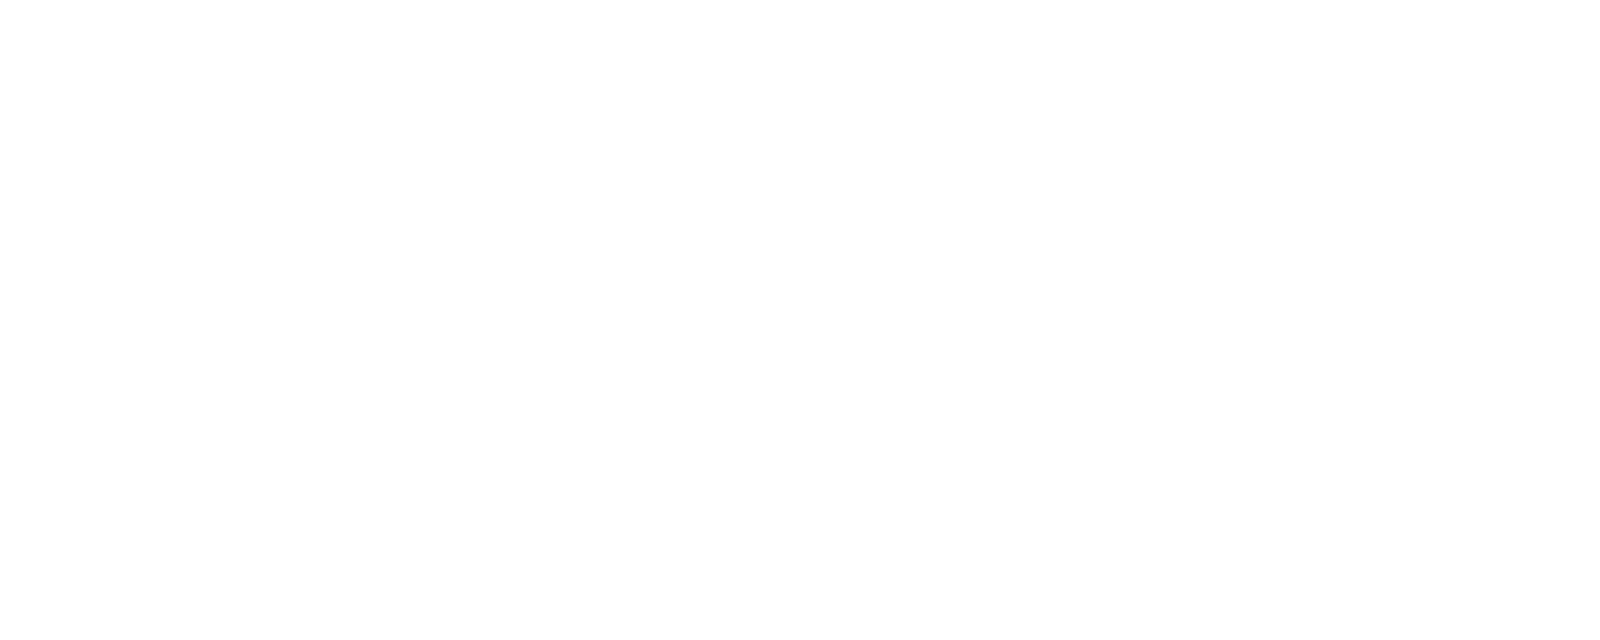 Logodol 全てが高画質 背景透過なアーティストのロゴをお届けするブログ Babymetalの背景透明で大きなロゴ を再現したのだけれど 途中で心折れたよ